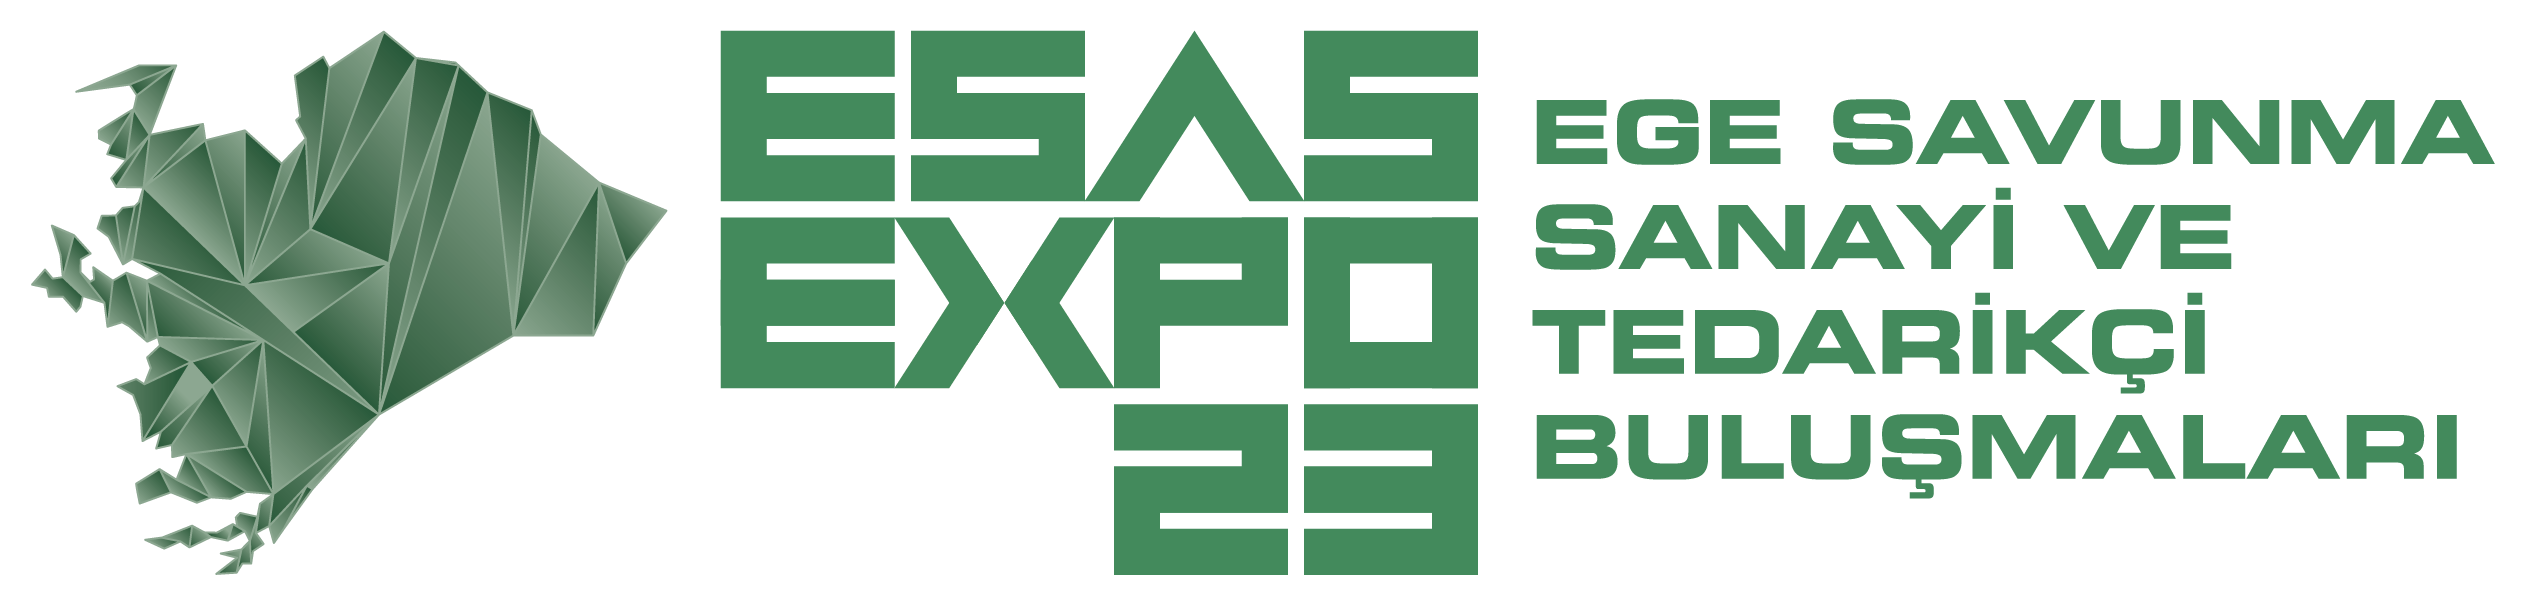 ESAS EXPO Ege Savunma Sanayi ve Tedarikçi Buluşmaları 18-20 Ocak 2023 İZMİR